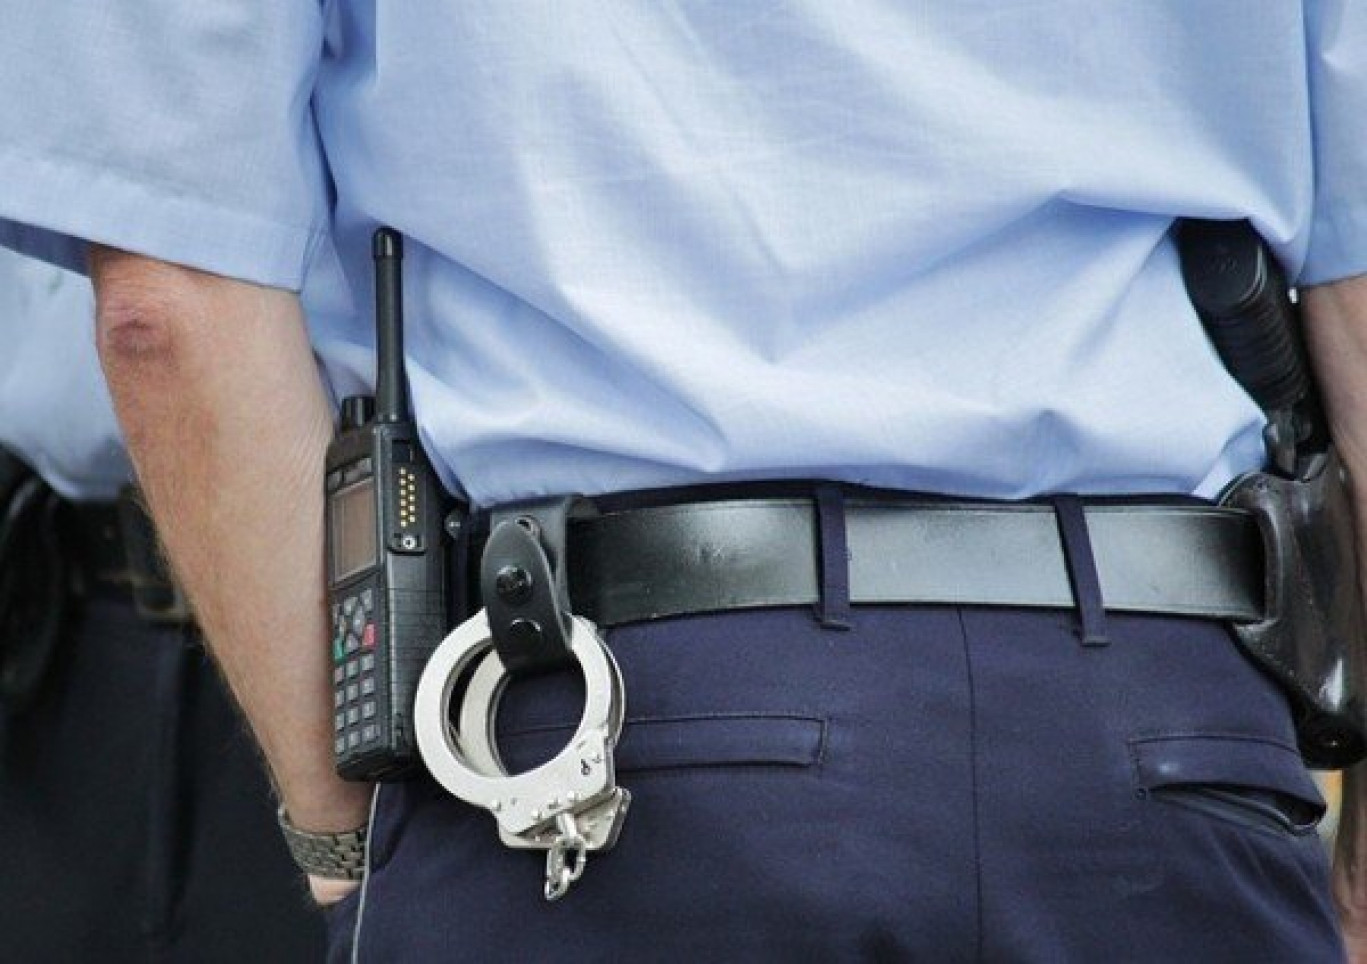 Poliziotto arrestato in Calabria: in viaggio con moglie e figlio, trasporta 7.5 kg di cocaina  